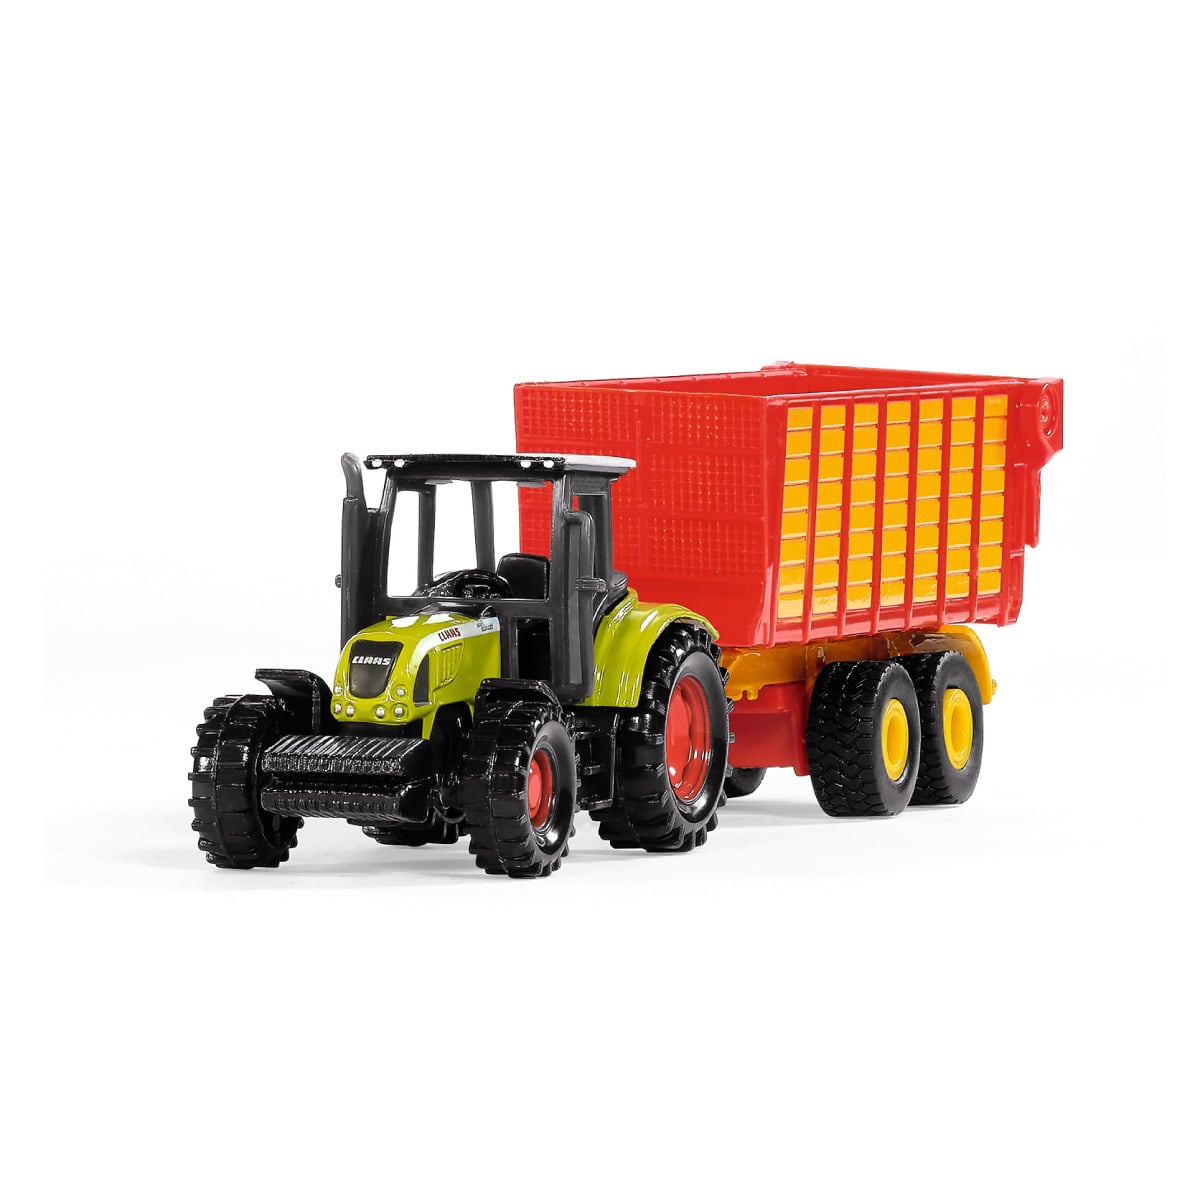 トラクター用 トレーラー 運搬車 - 農業